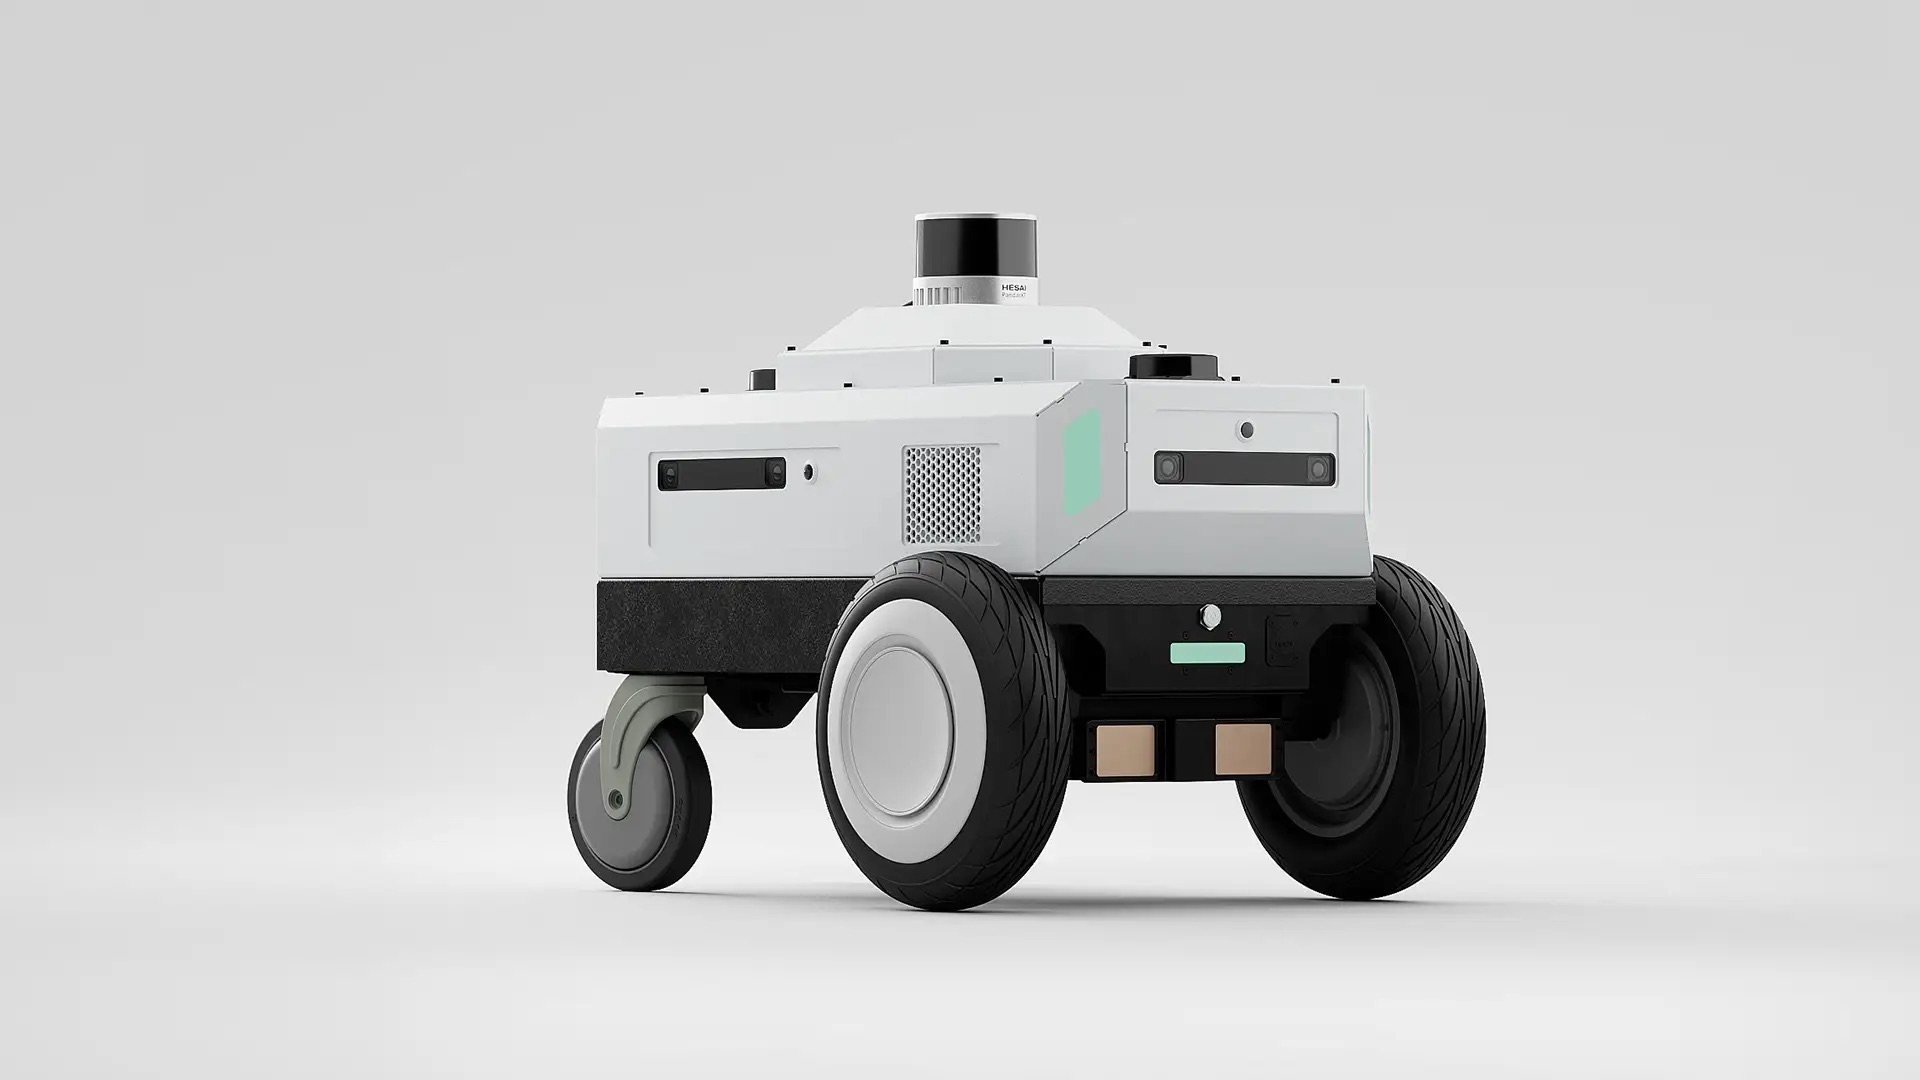 NVIDIAとセグウェイ、国際ロボット展「iREX」にて最先端ロボティクス「Nova Carter」を日本初公開